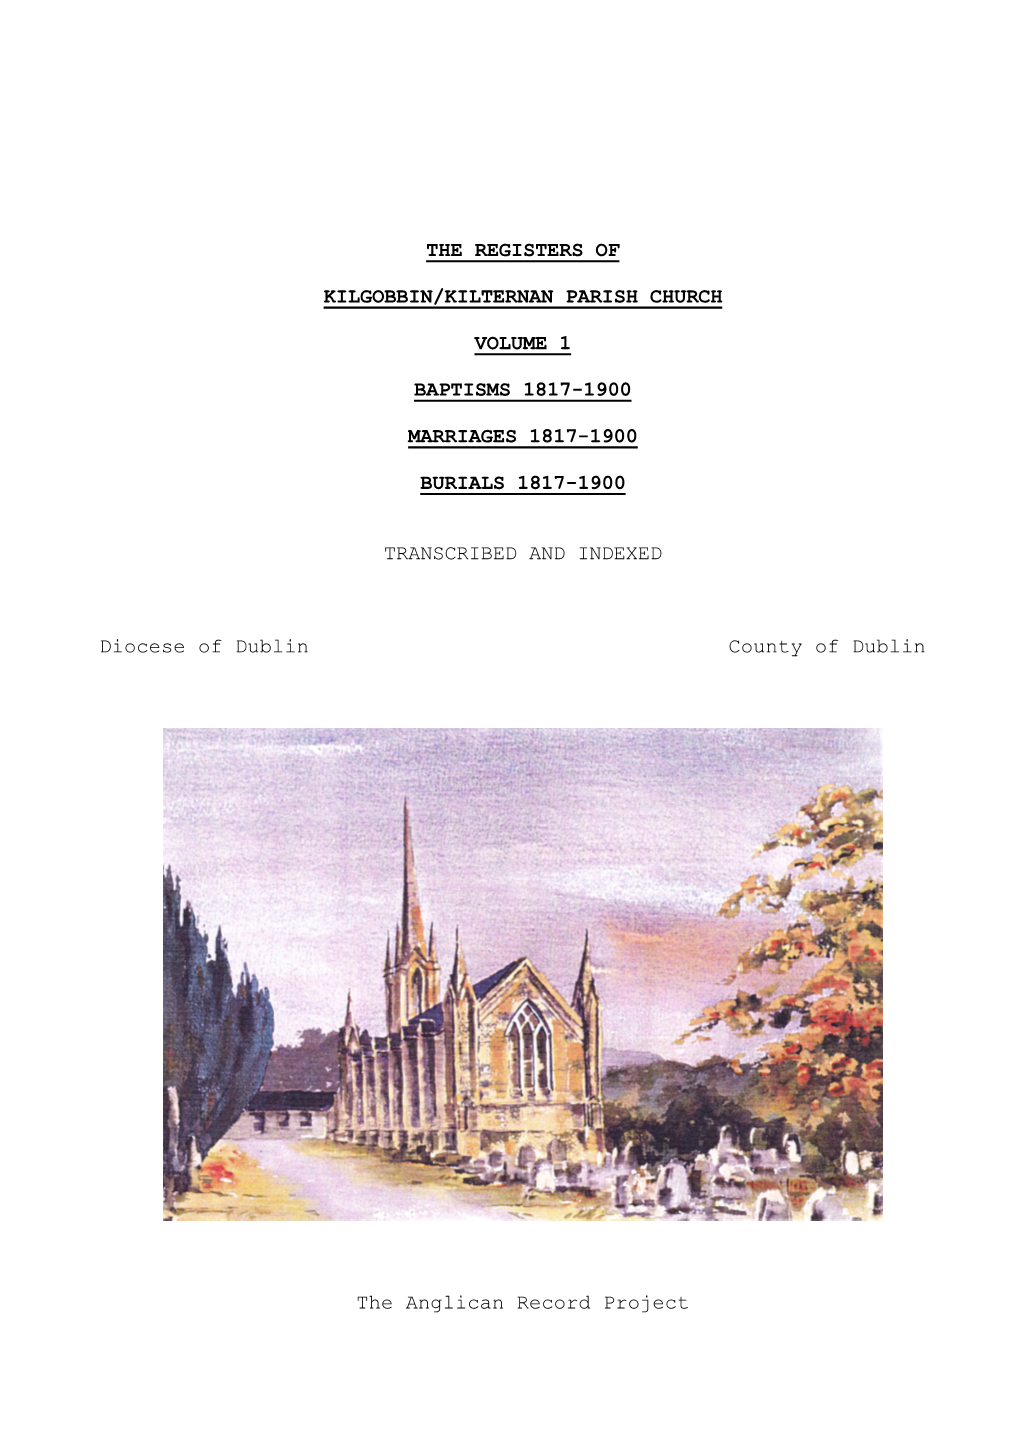 The Registers of Kilgobbin/Kilternan Parish